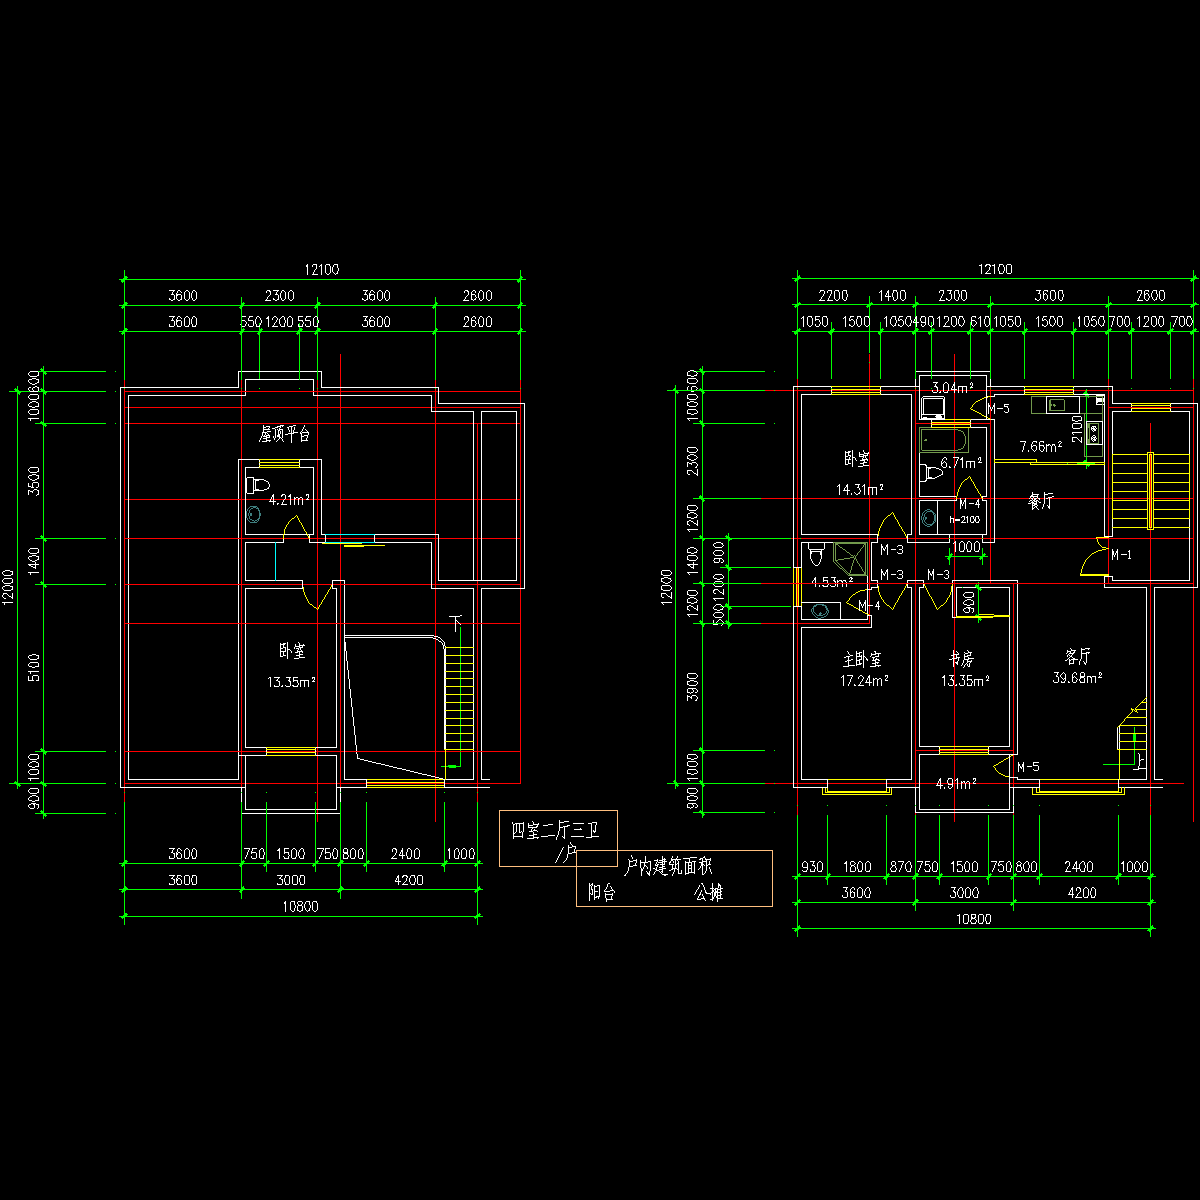 板式多层一梯二户四室二厅三卫有跃层户型CAD图纸(173/173)